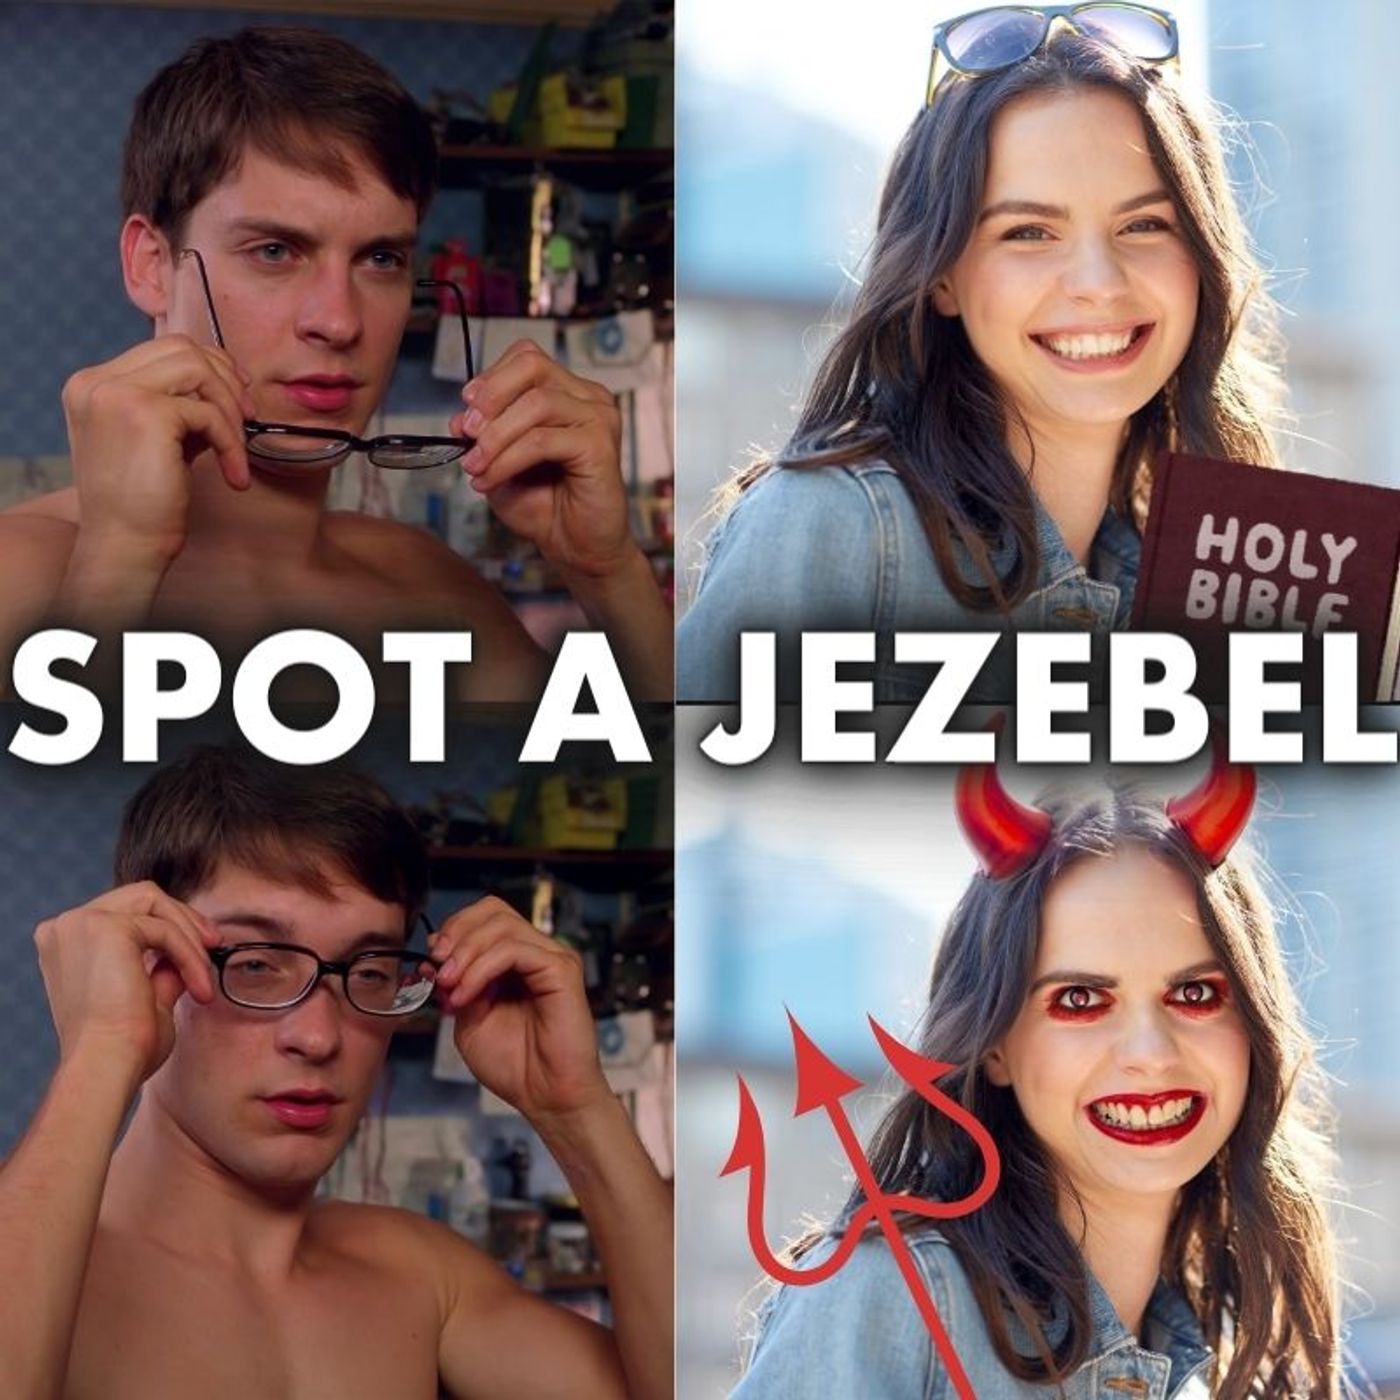 How to Overcome the Jezebel Spirit